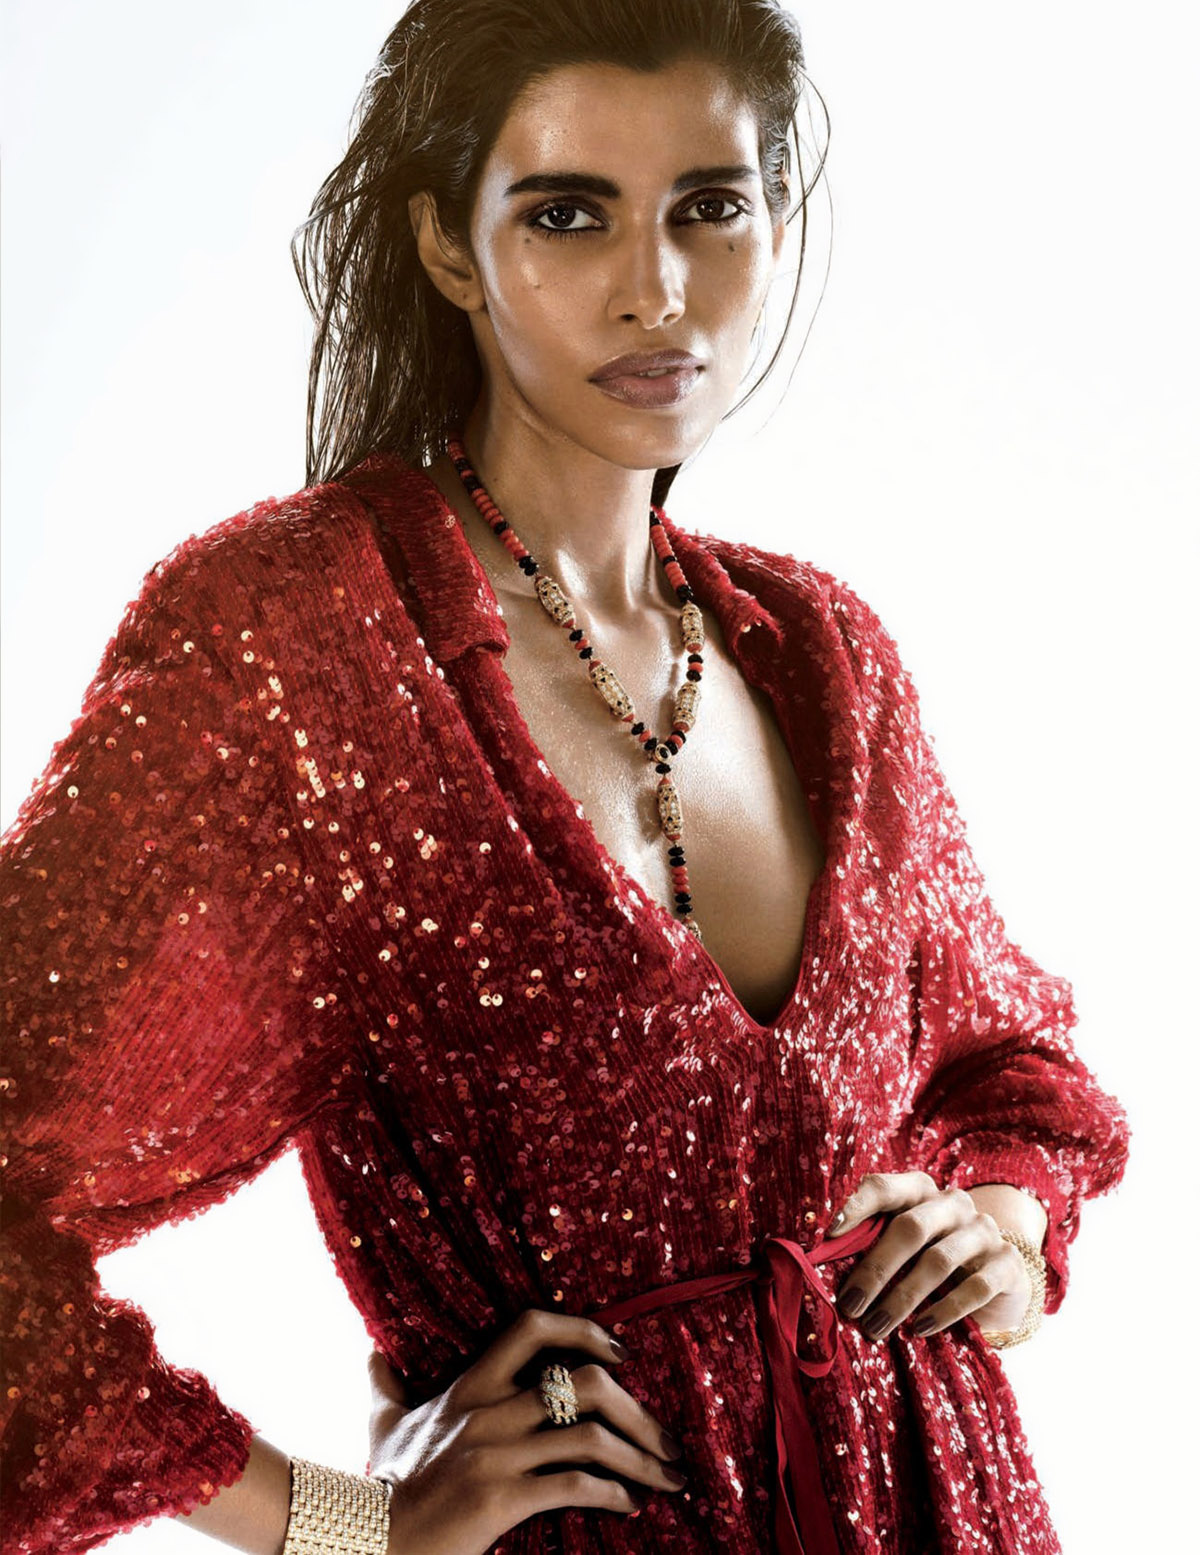 Pooja Mor by Ben Hassett for Vogue Spain September 2021